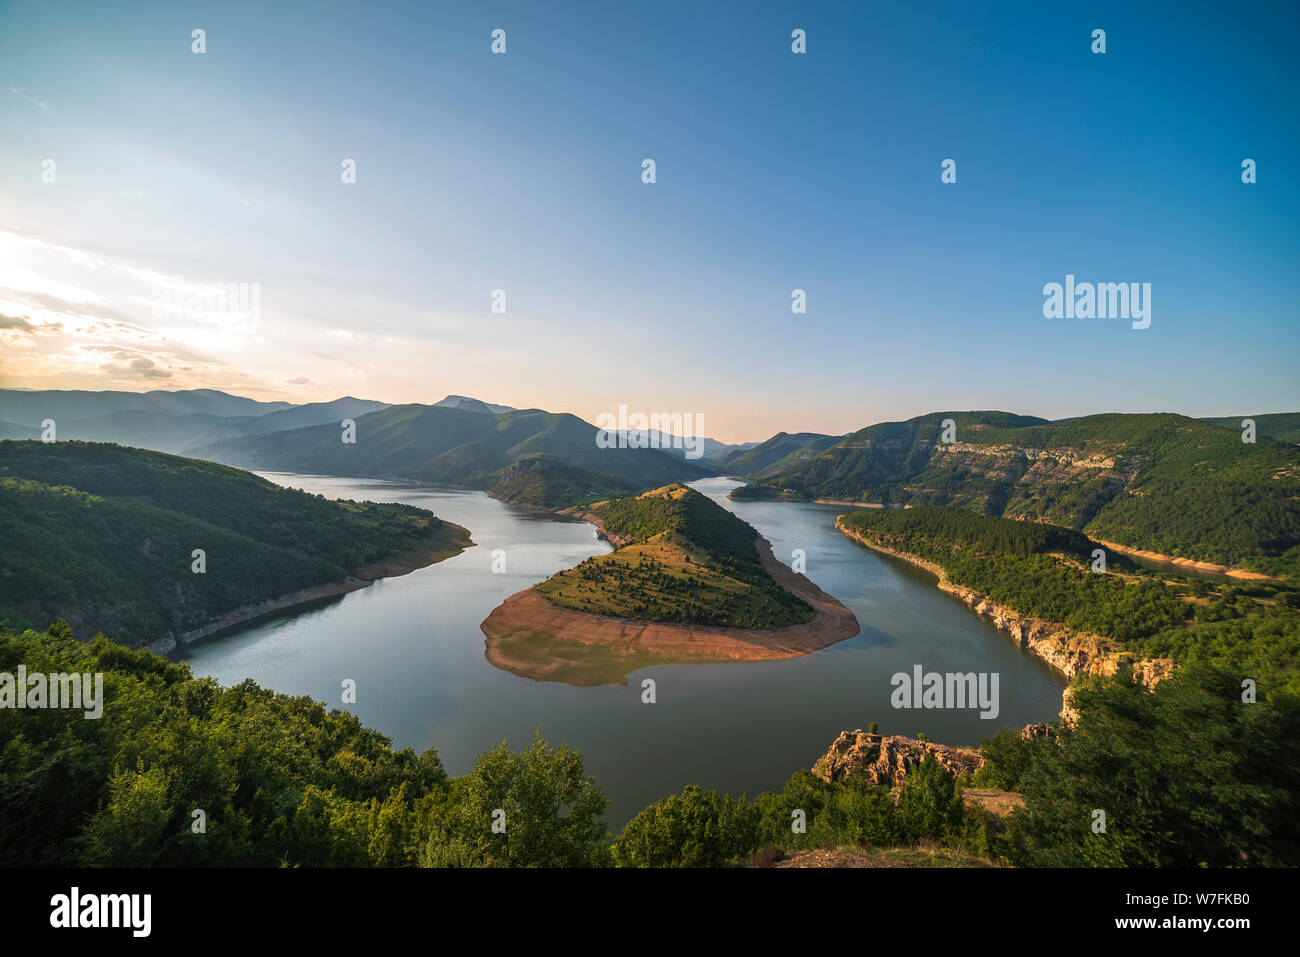 La Bulgarie, Kardzhali barrage, vue panoramique de la rivière méandre dans Arda, entouré de vert de la forêt, l'heure d'été pendant le coucher du soleil Banque D'Images